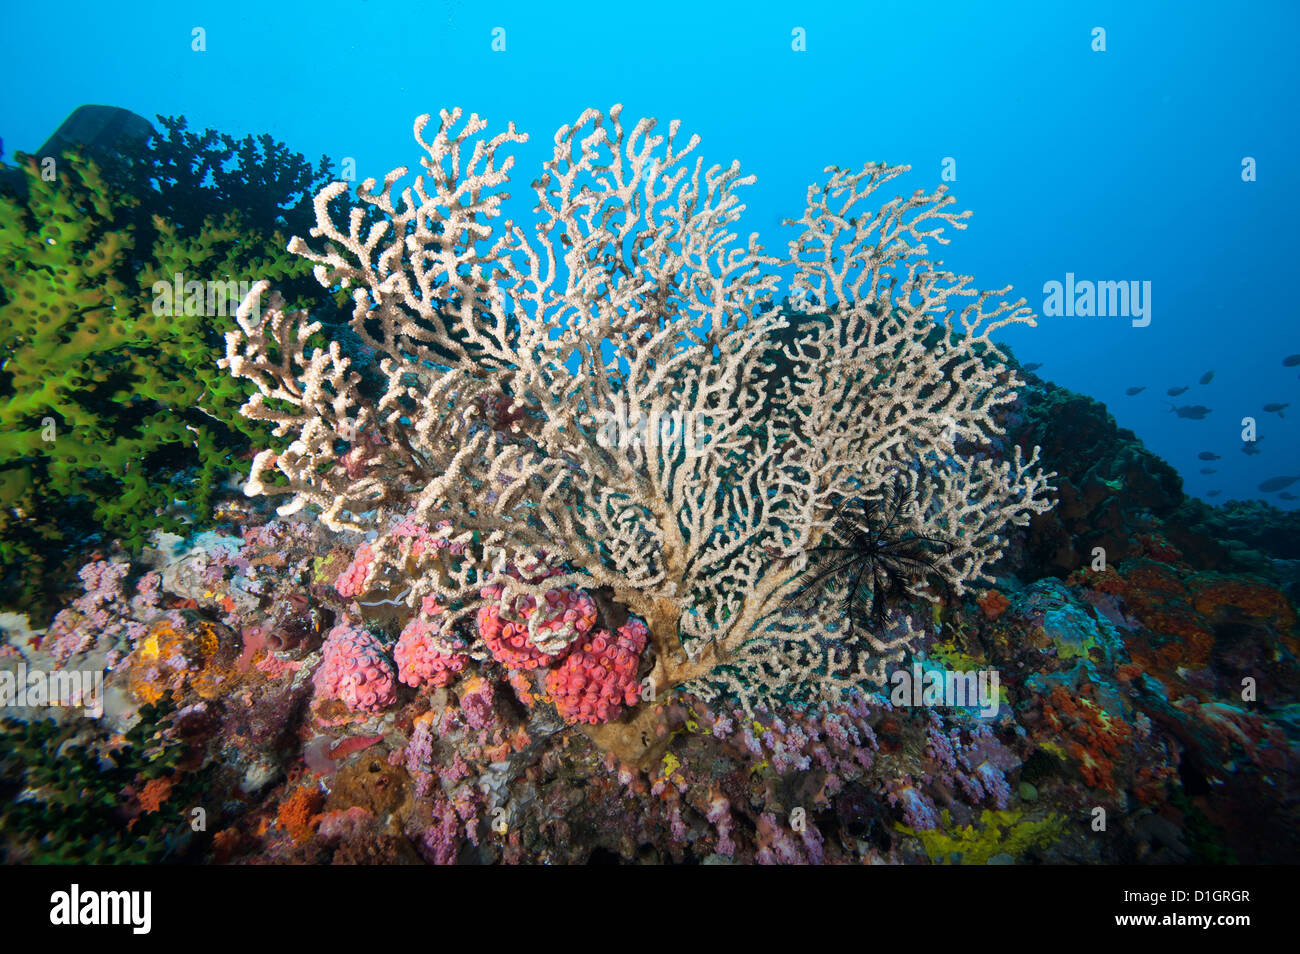 Reef scene, Sulawesi, Indonesia, Southeast Asia, Asia Stock Photo